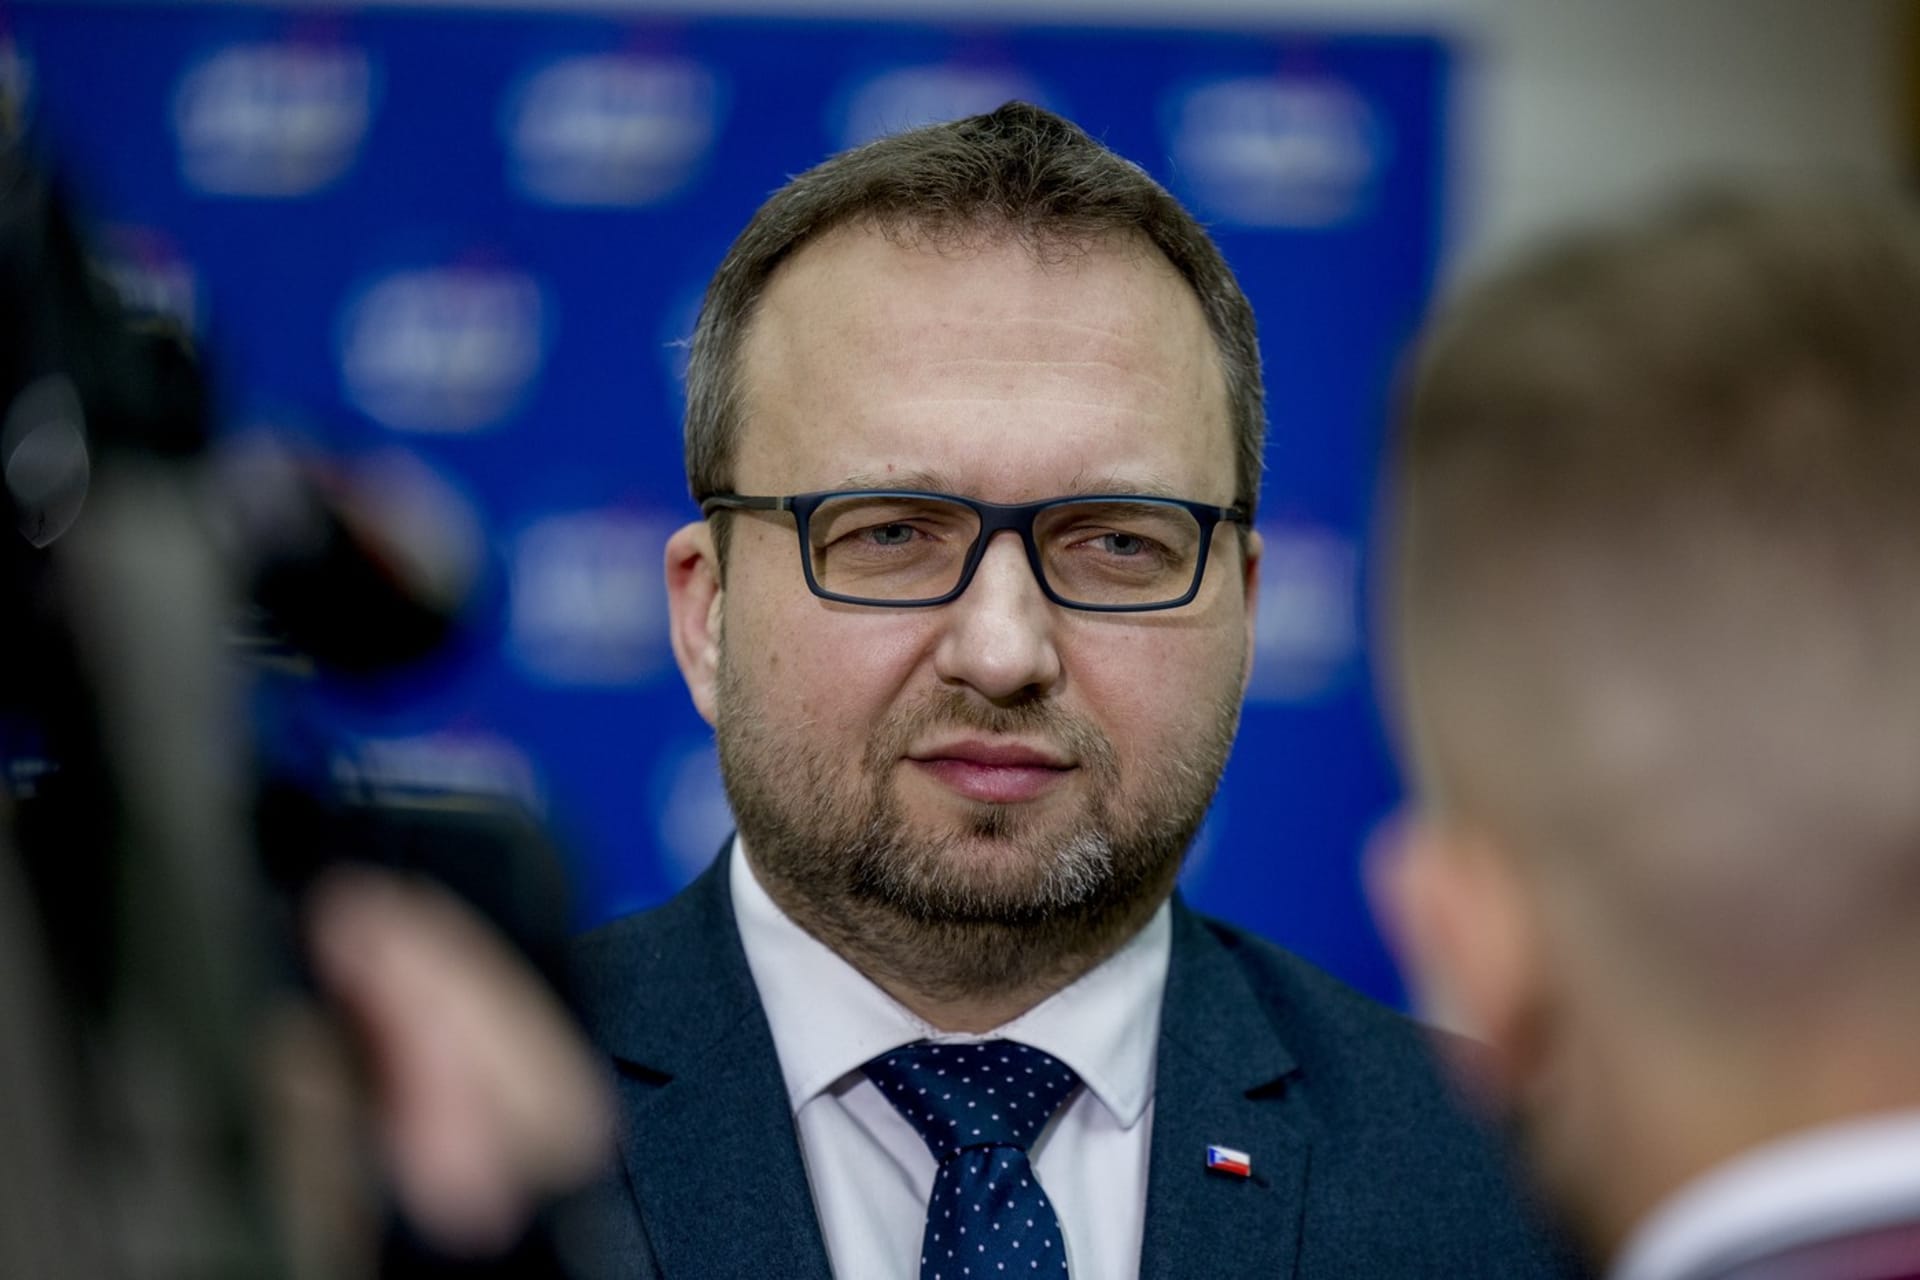 Rozpor mezi koalicí a opozicí se objevil po březnovém jednání se zástupci vlády v čele s ministrem práce a sociálních věcí Marianem Jurečkou (KDU-ČSL).